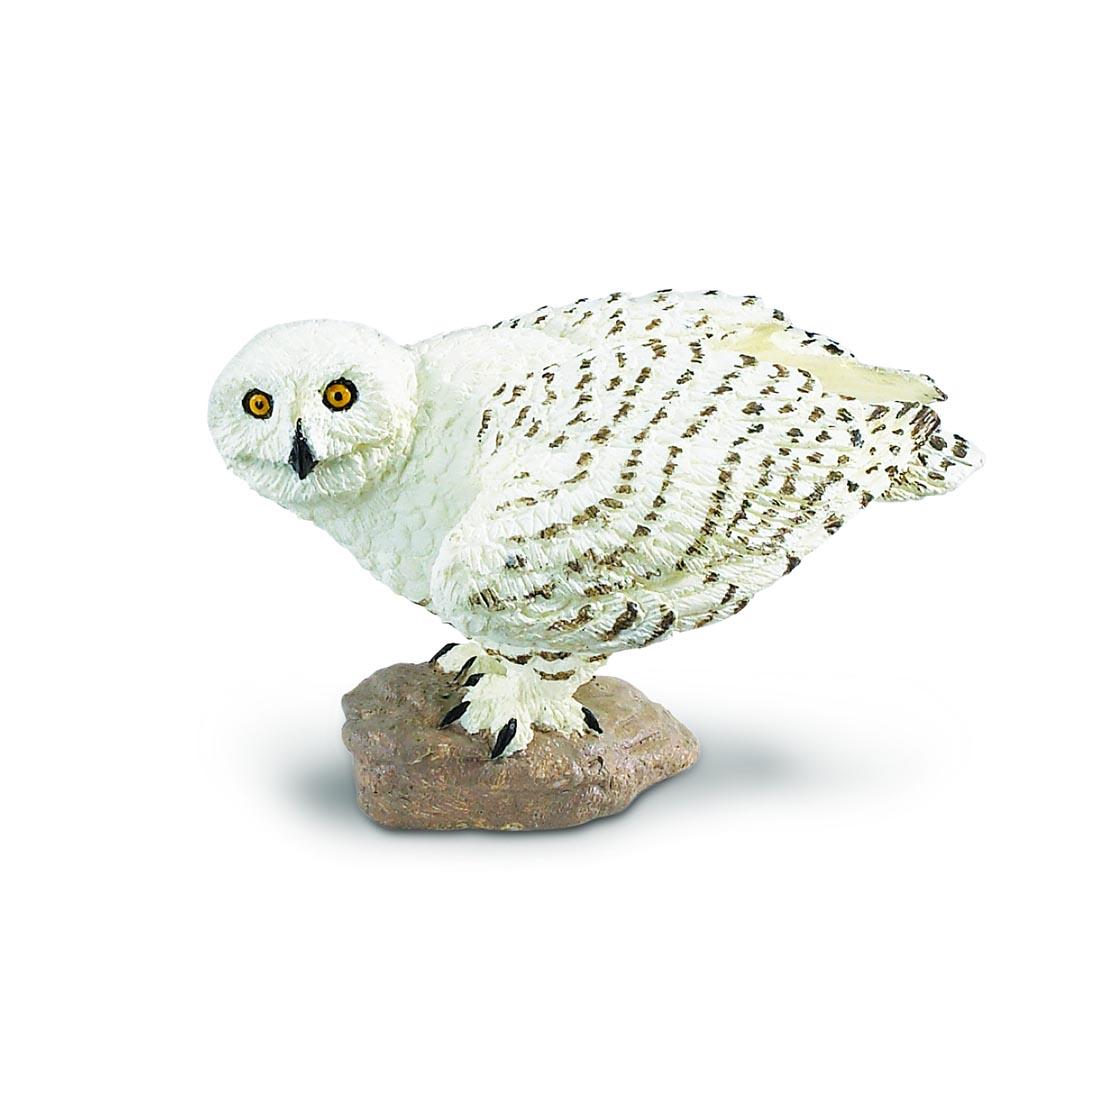 Snowy Owl Figurine